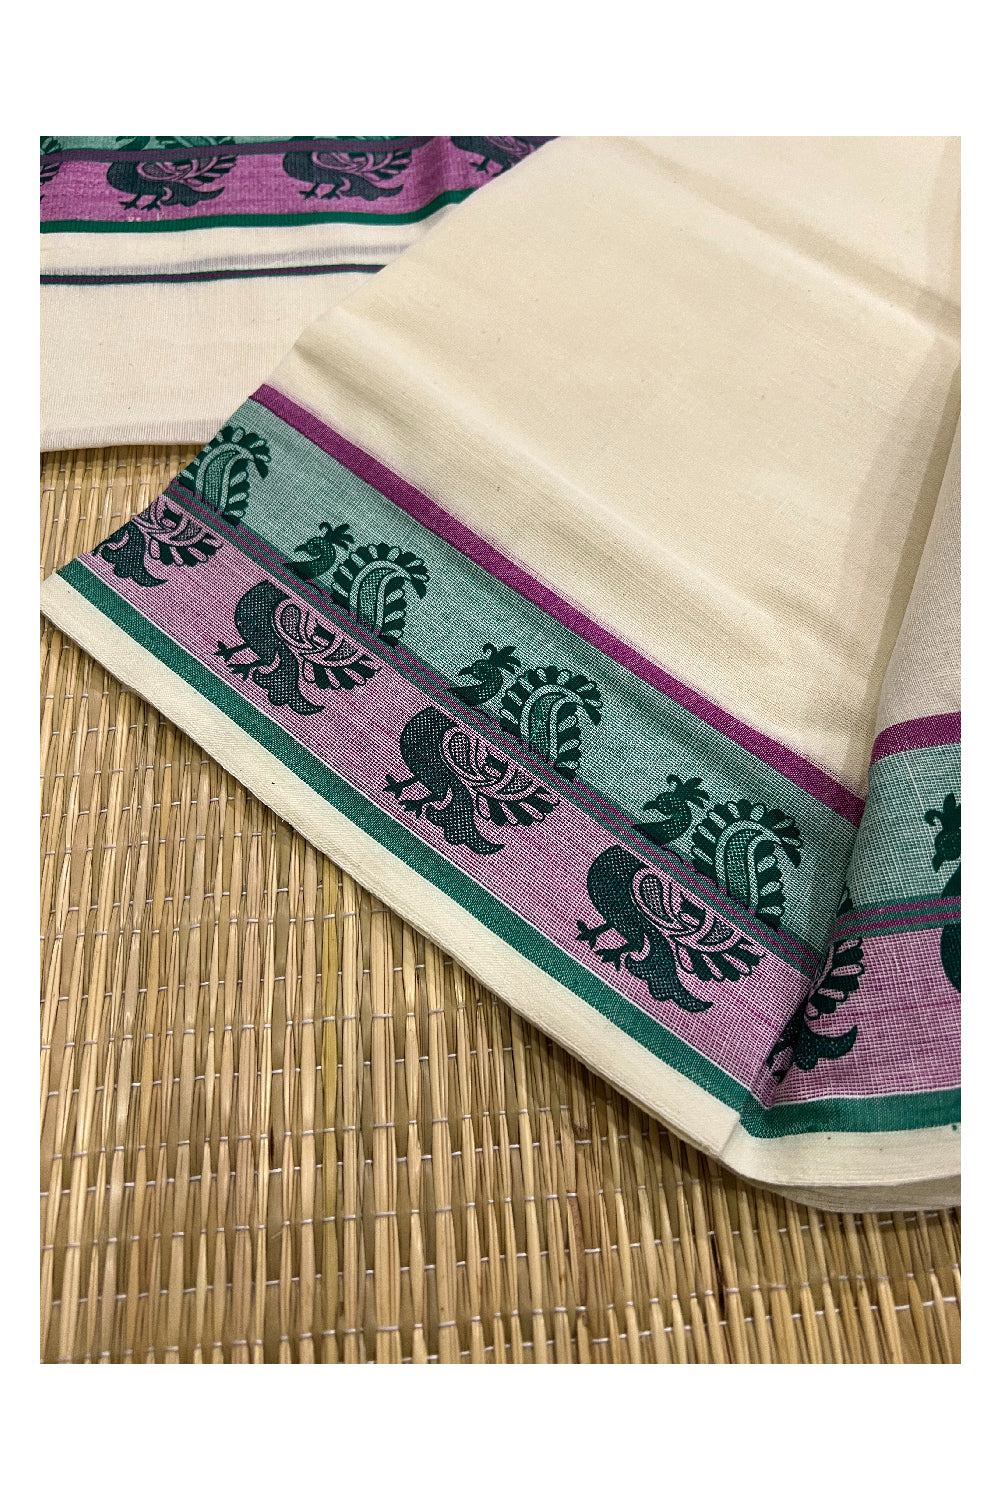 Kerala Cotton Set Mundu (Mundum Neriyathum) with Green Magenta Peacock Block Prints on Border